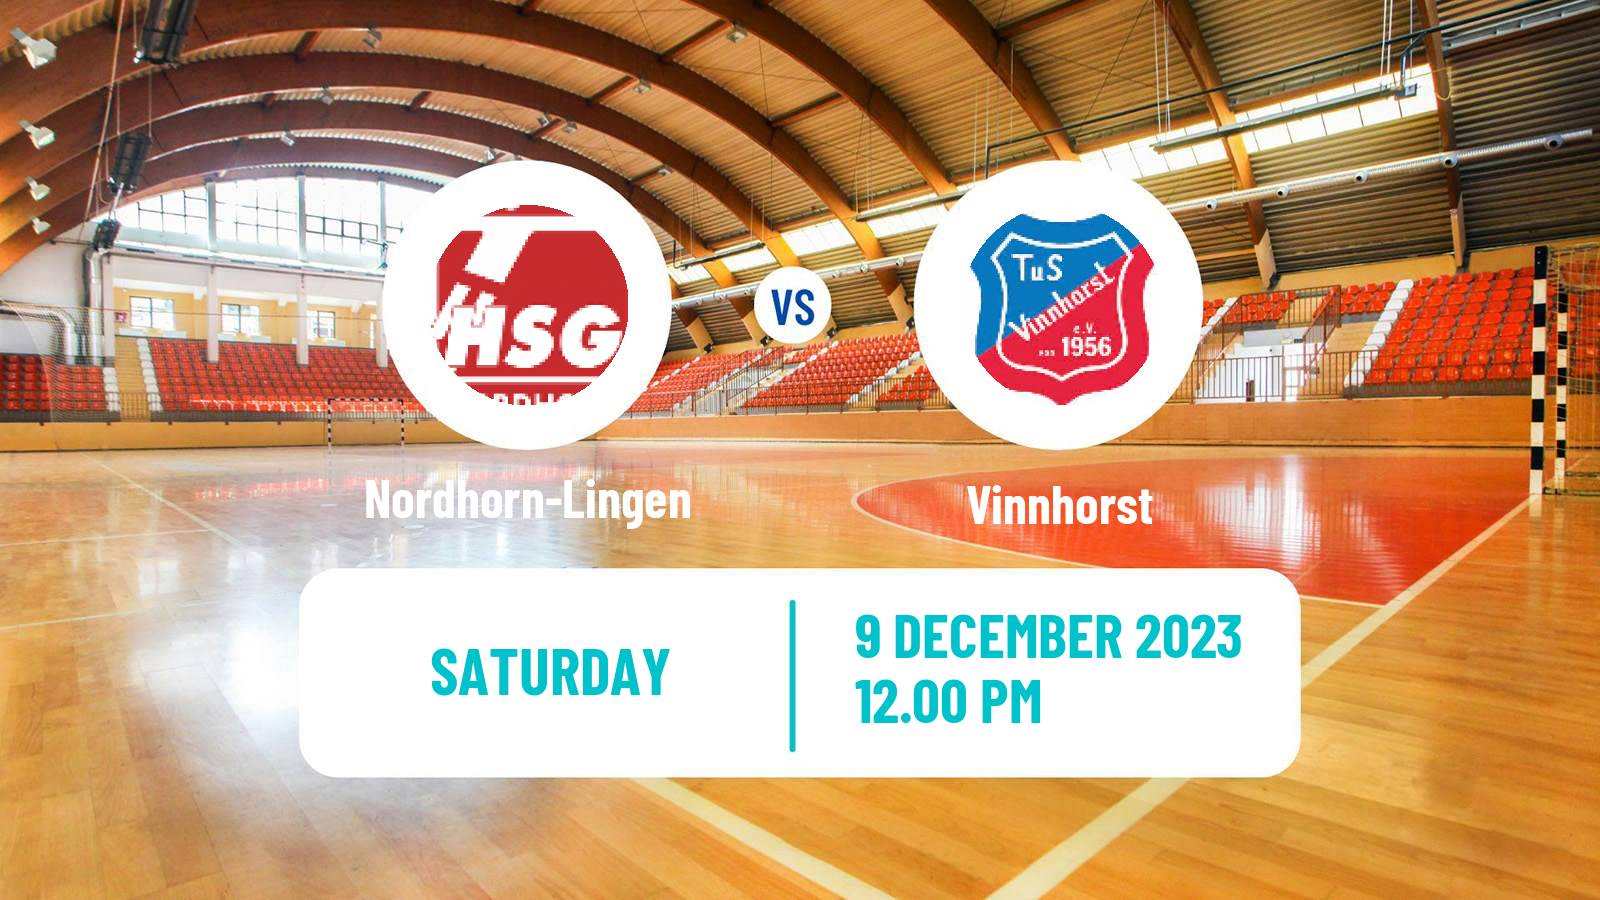 Handball German 2 Bundesliga Handball Nordhorn-Lingen - Vinnhorst